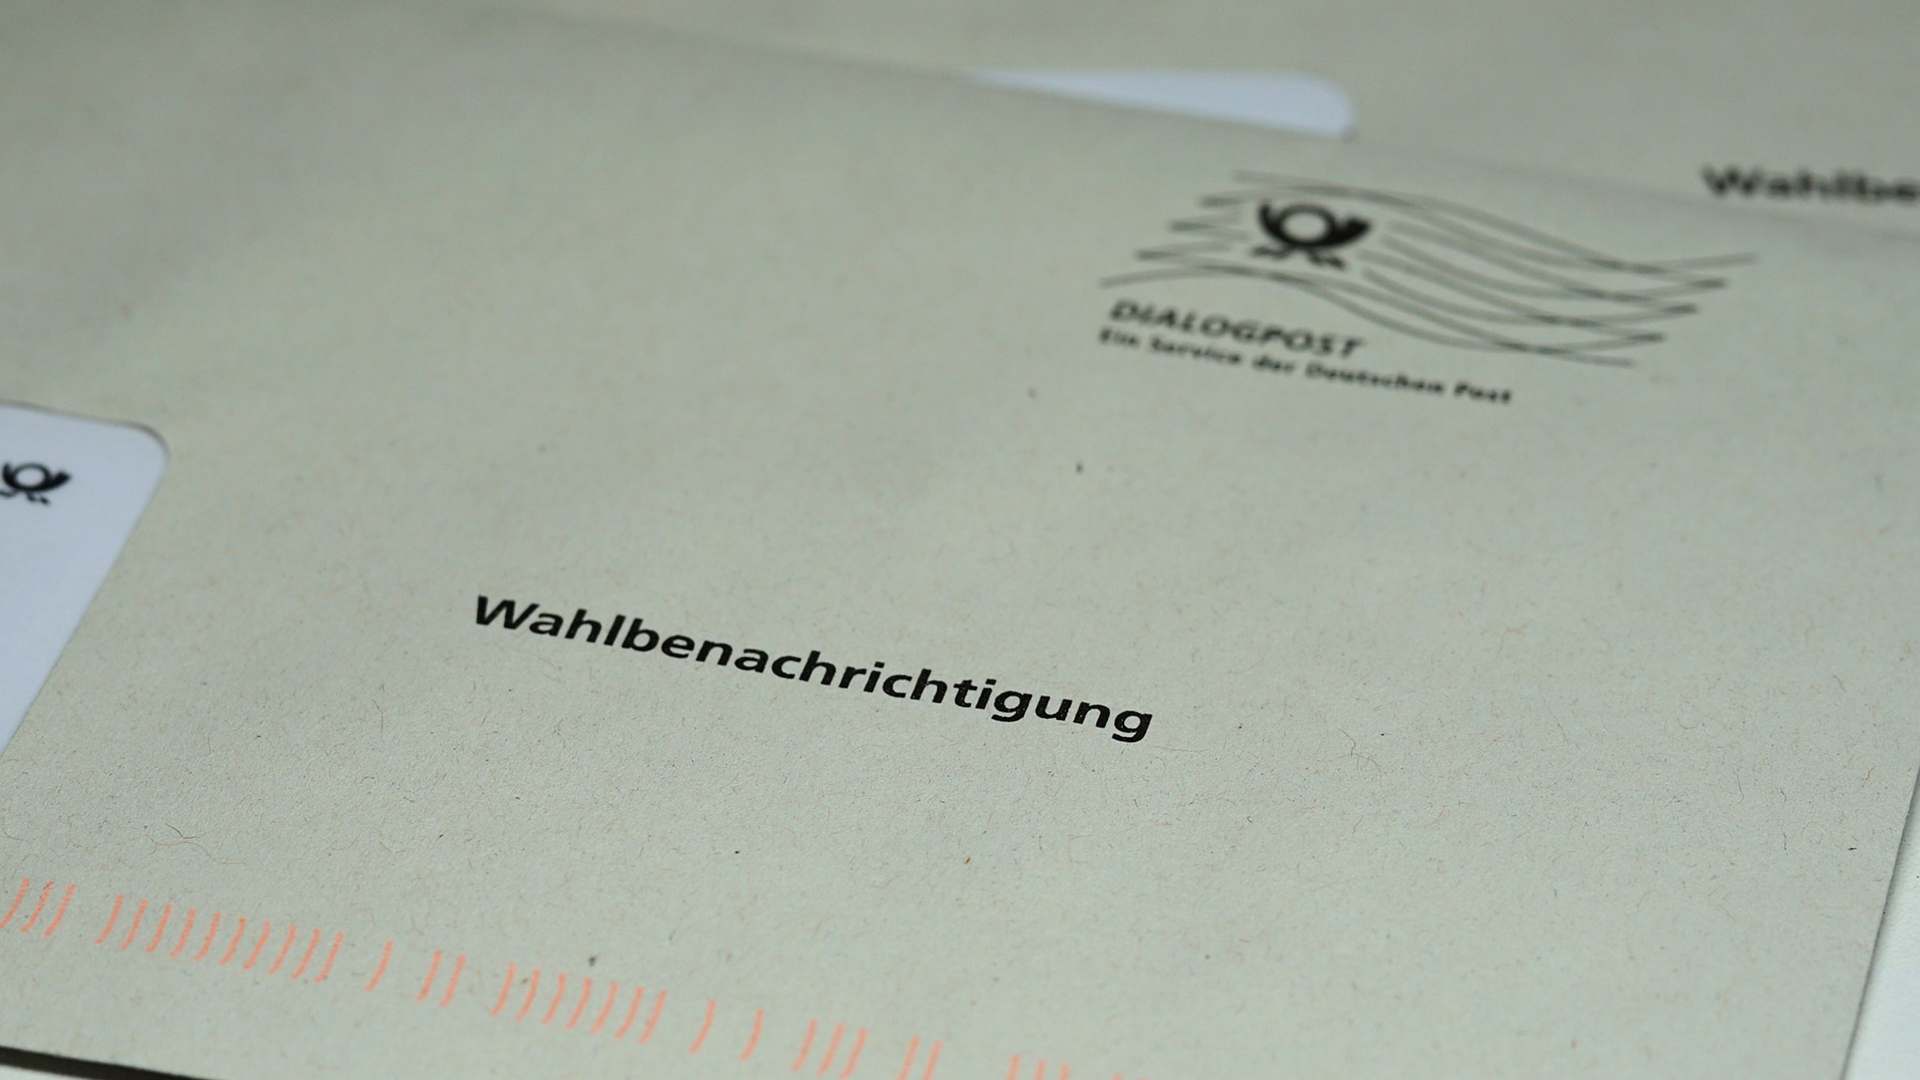 Ein Briefumschlag mit dem Aufdruck "Wahlbenachrichtigung".